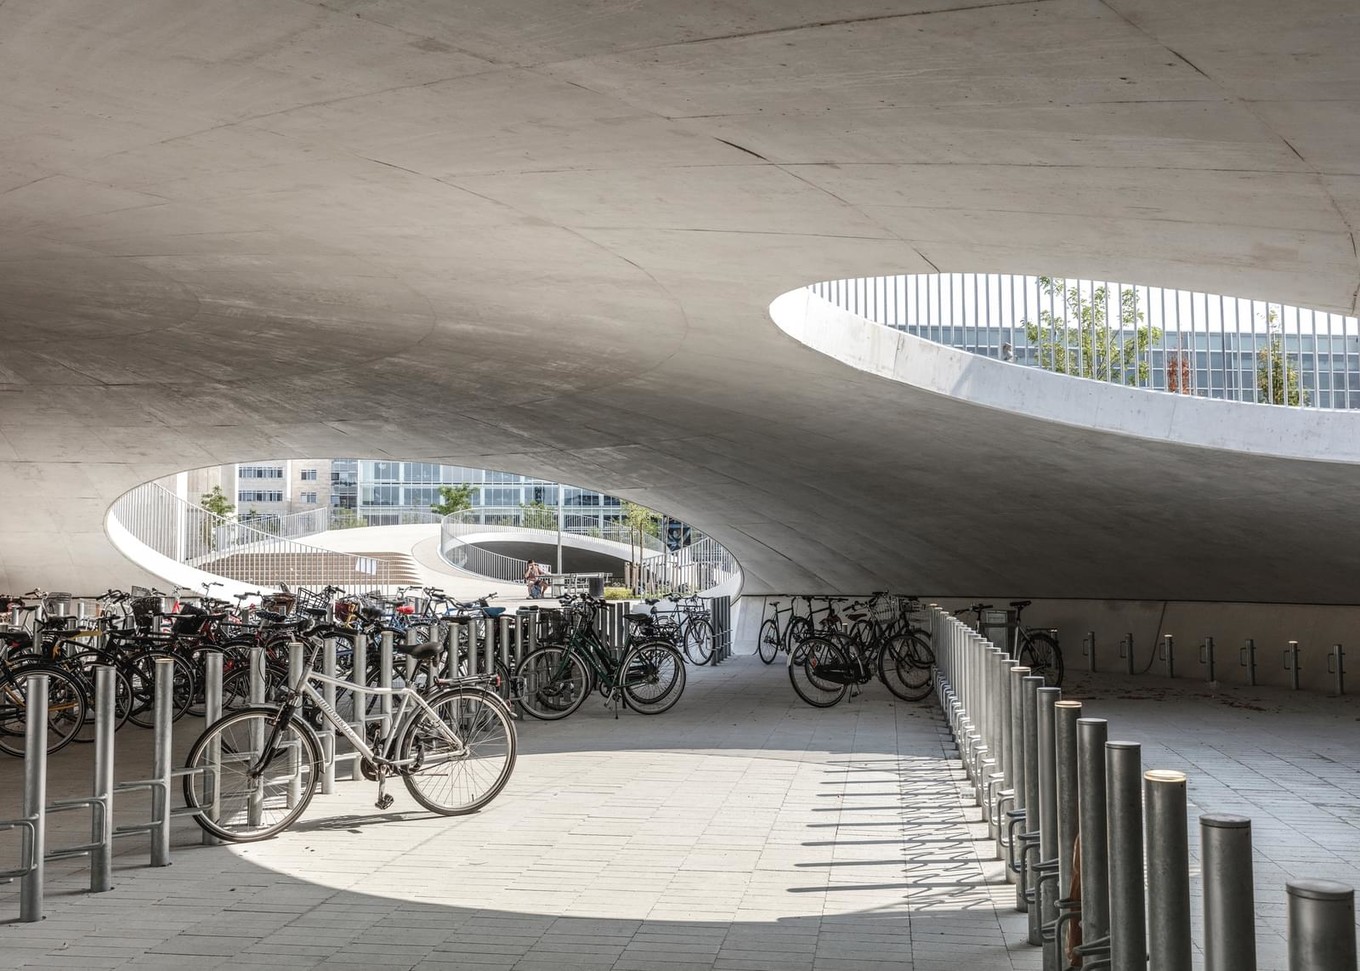 Велопарковка на общественной площади Копенгагена Karen, Blixens, Plads, бетонные, Архитектурное, концертов, зрительный, который, может, использован, мероприятий, представлений, публичных, вместимостью, человек, Архитекторы, открытый, превратить, пространство, простые